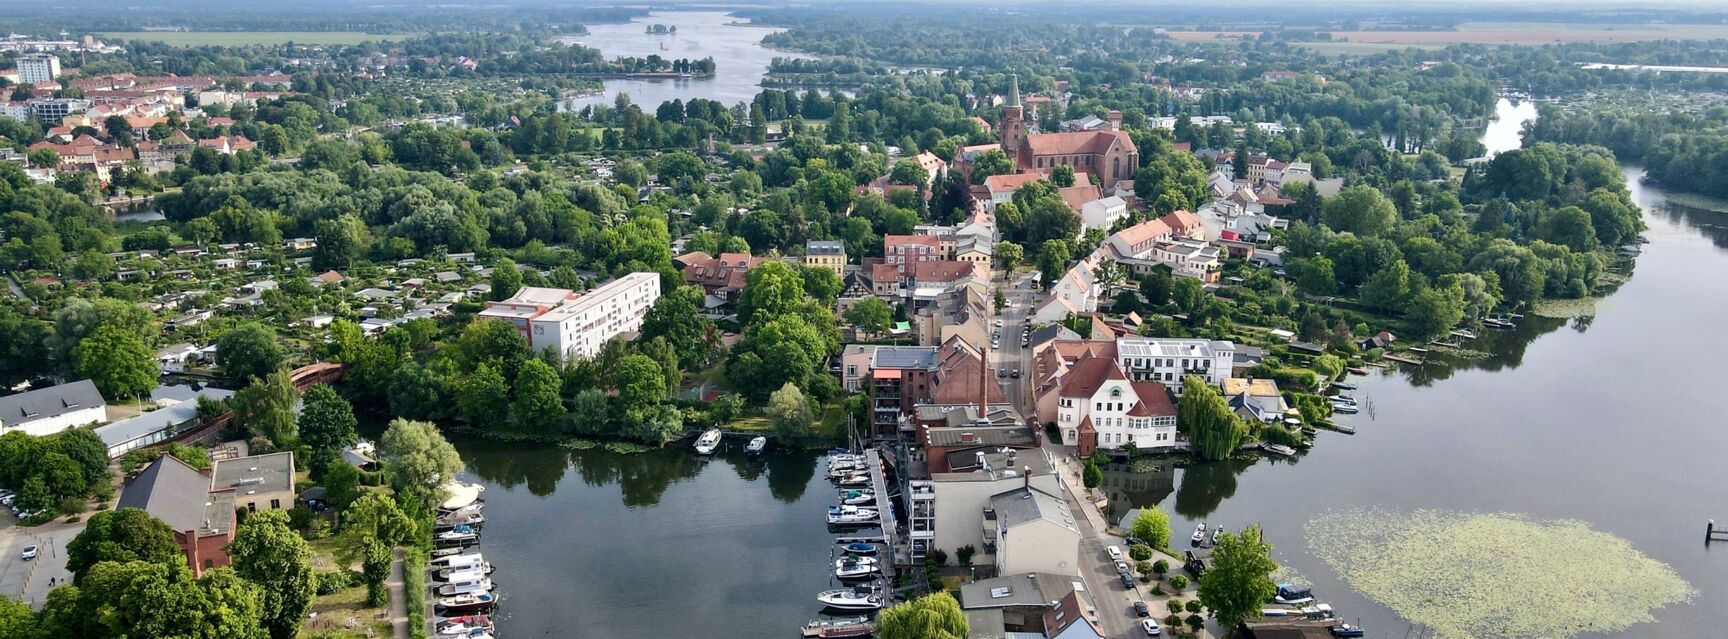 Luftaufnahme Dominsel ©STG, Stadt Brandenburg